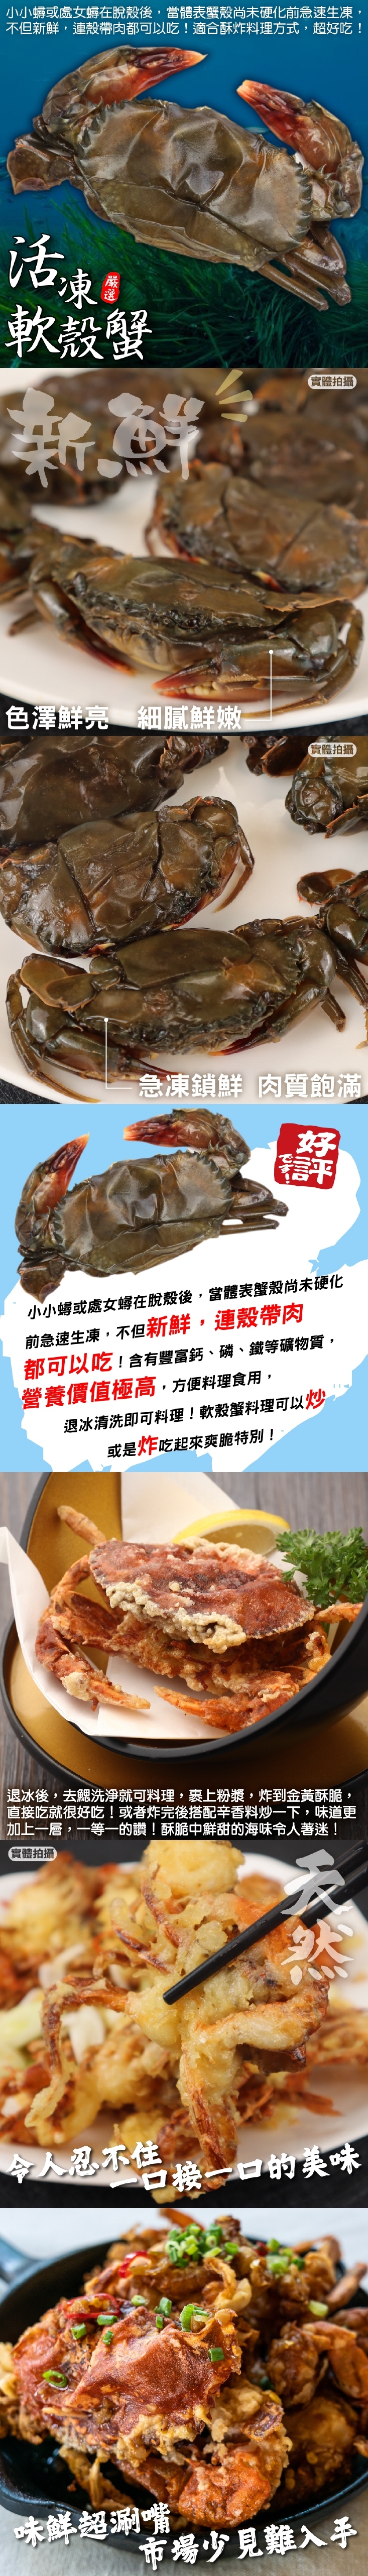       【三頓飯】嚴選冷凍軟殼蟹(6盒_8-10隻/600g/盒)